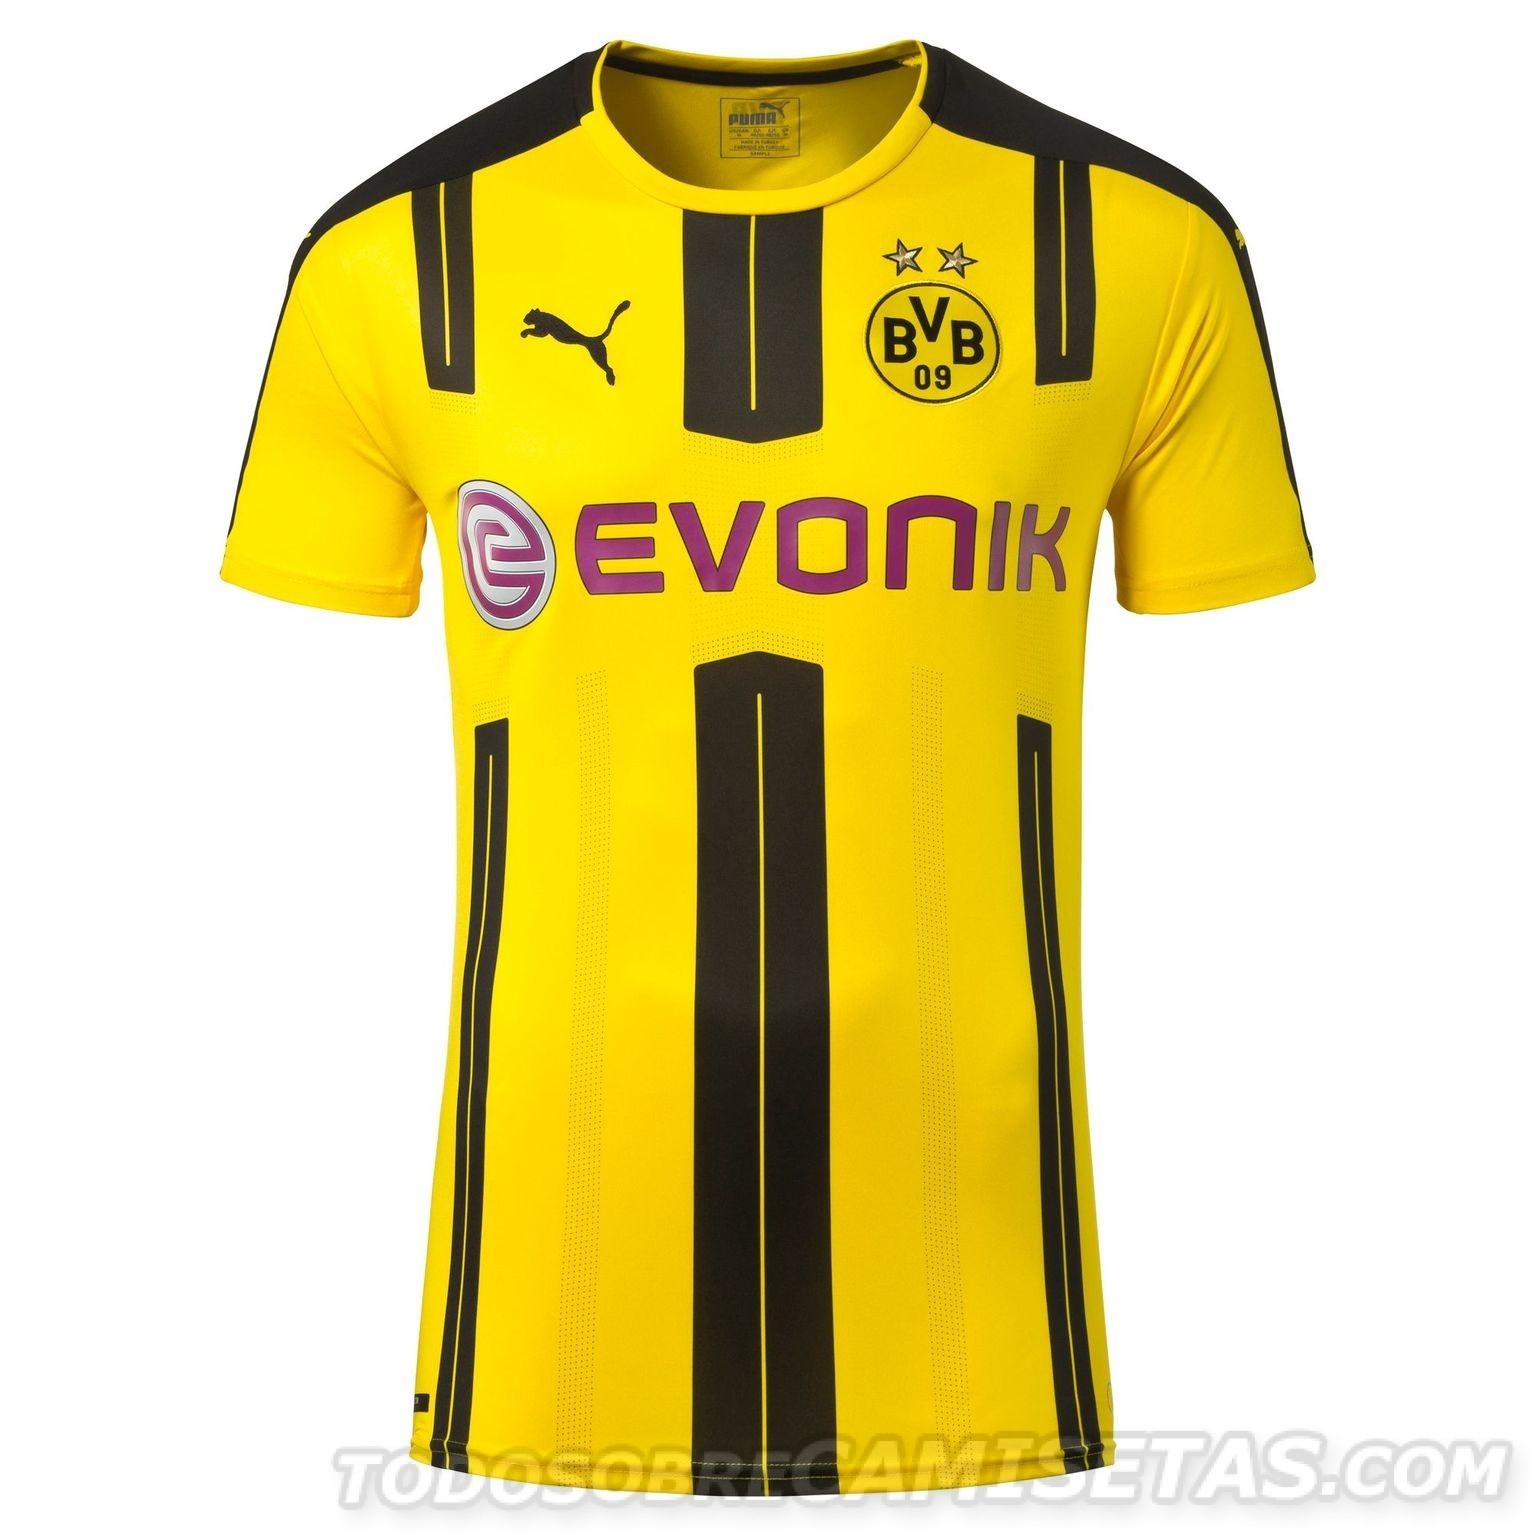 Dortmund-2016-17-PUMA-new-home-kit-6.jpg